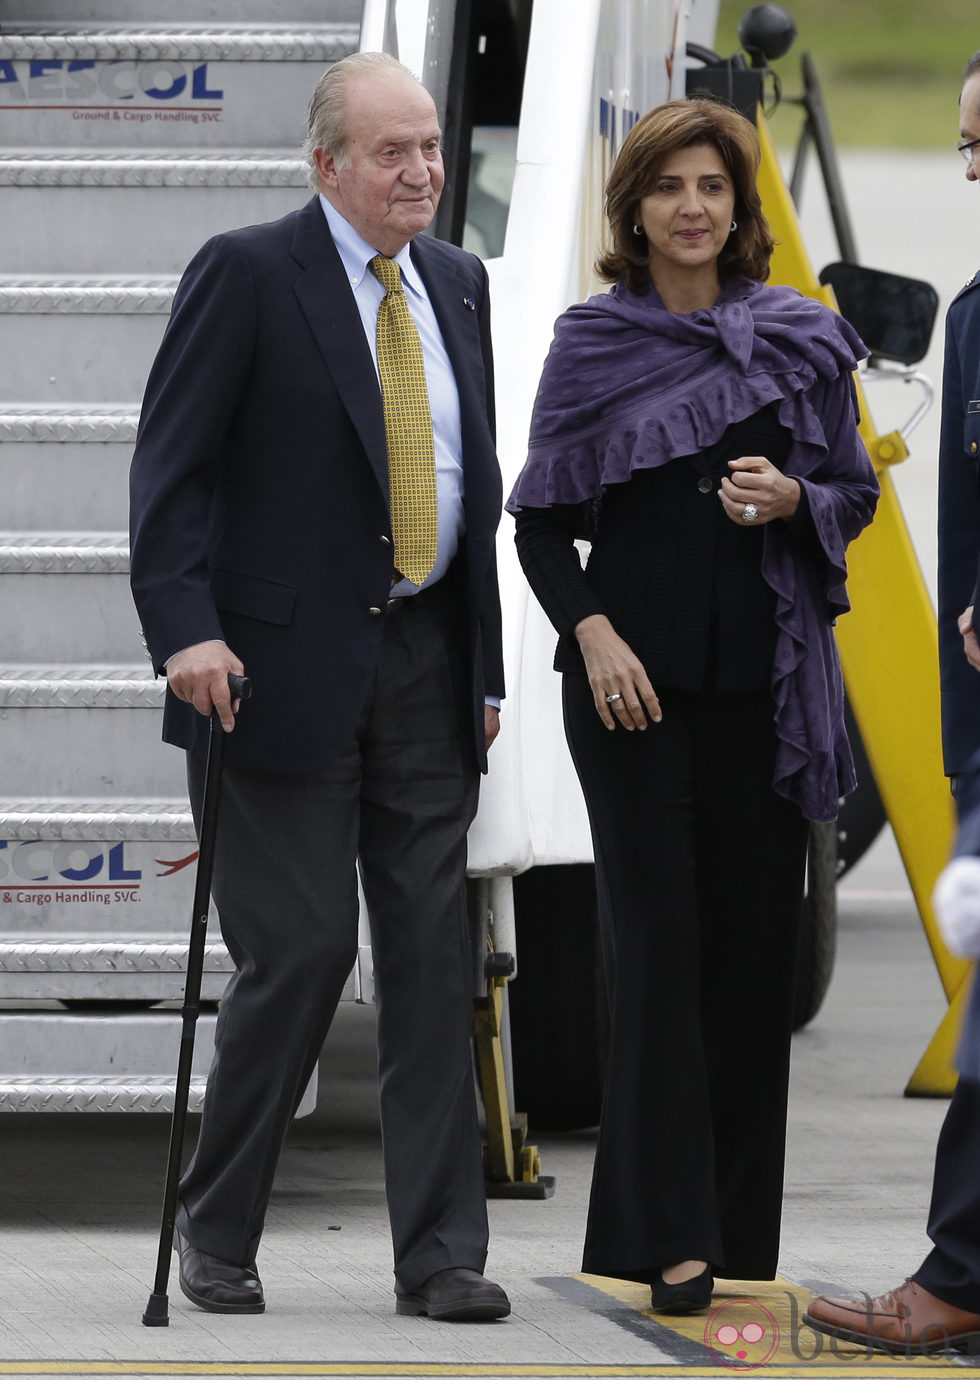 El Rey Juan Carlos de visita en Colombia